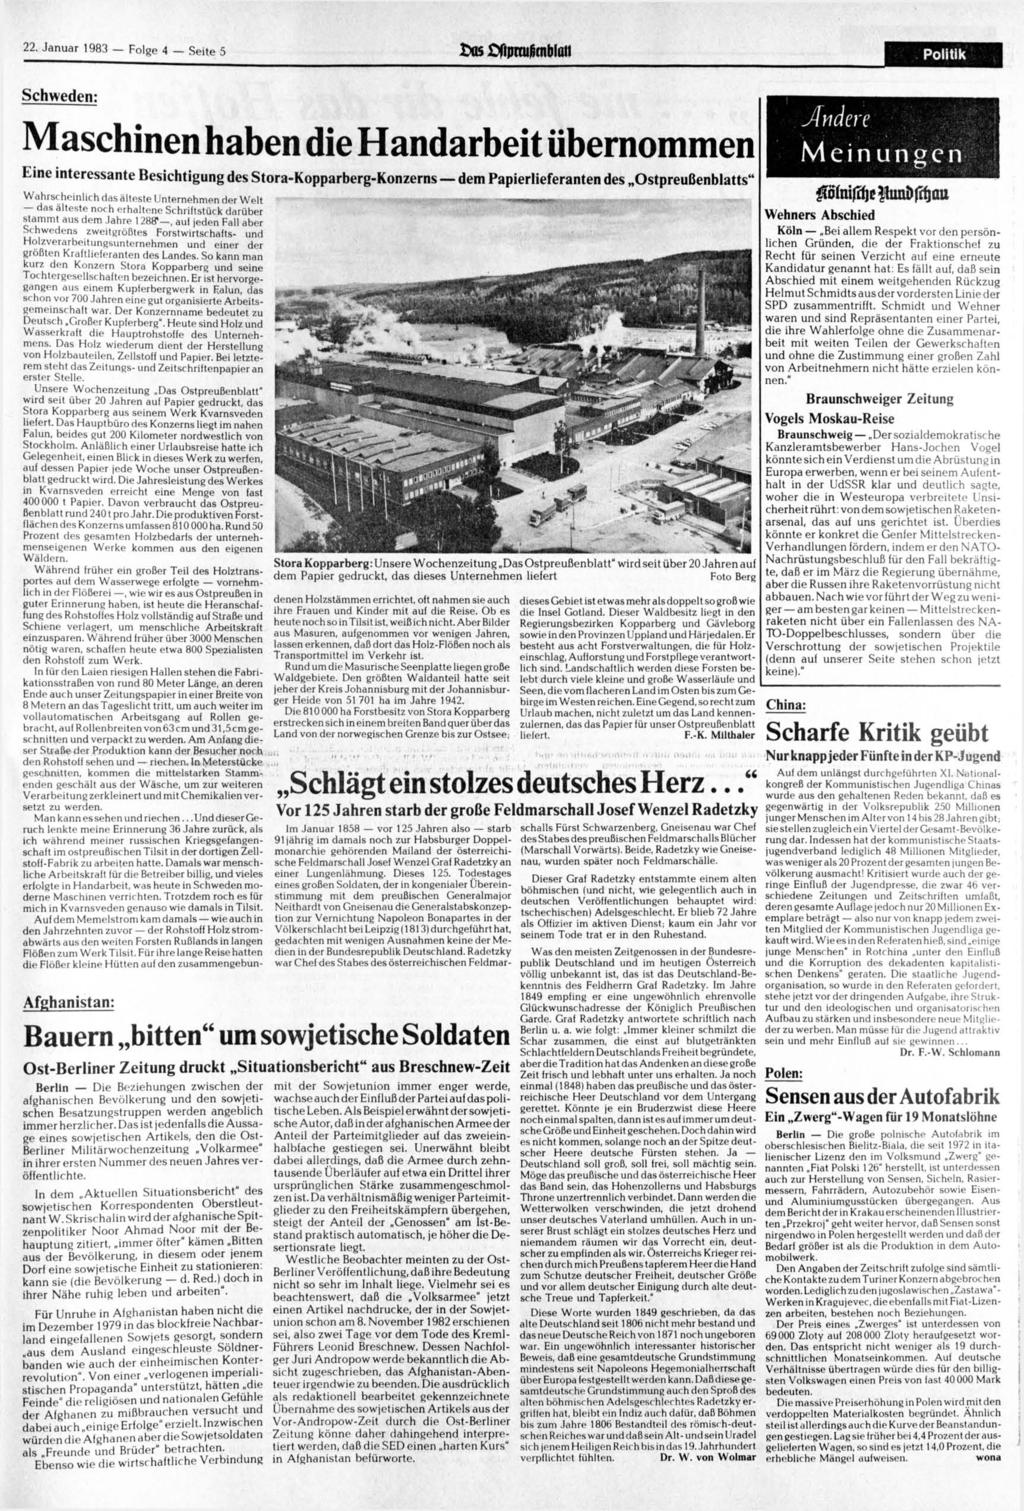 22. 1983 Folge 4 Seite 5 os HtprtURrnblüii Politik Schweden: Maschinen haben die Handarbeit übernommen Eine interessante Besichtigung des Stora-Kopparberg-Konzerns dem Papierlieferanten des